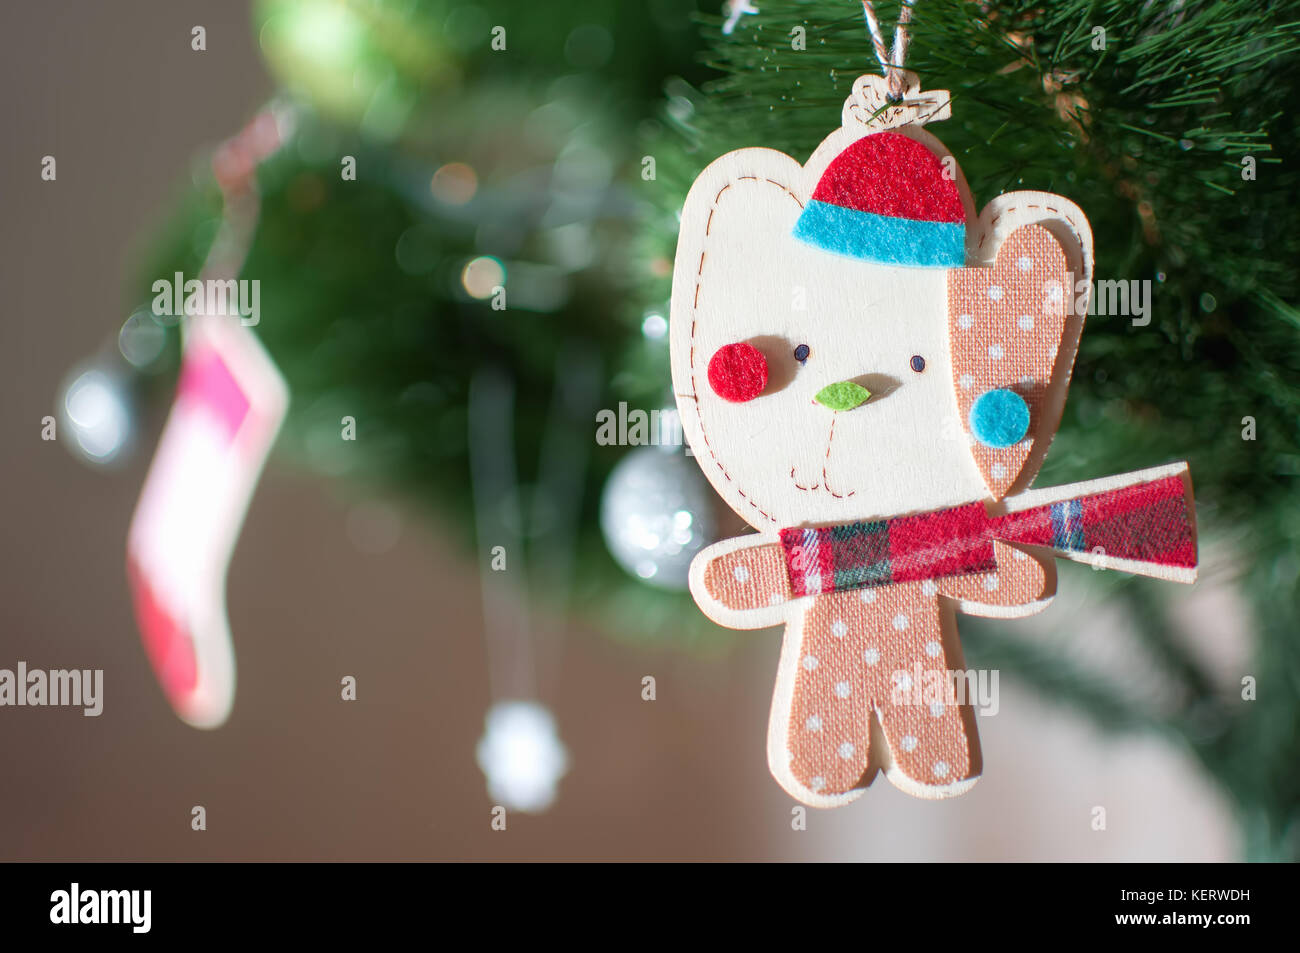 Un juguete de Navidad de madera en forma de un gato de dibujos animados  vestidos de invierno Gorra, pañuelo rojo a cuadros y el bebé romper con  lunares print está colgando de